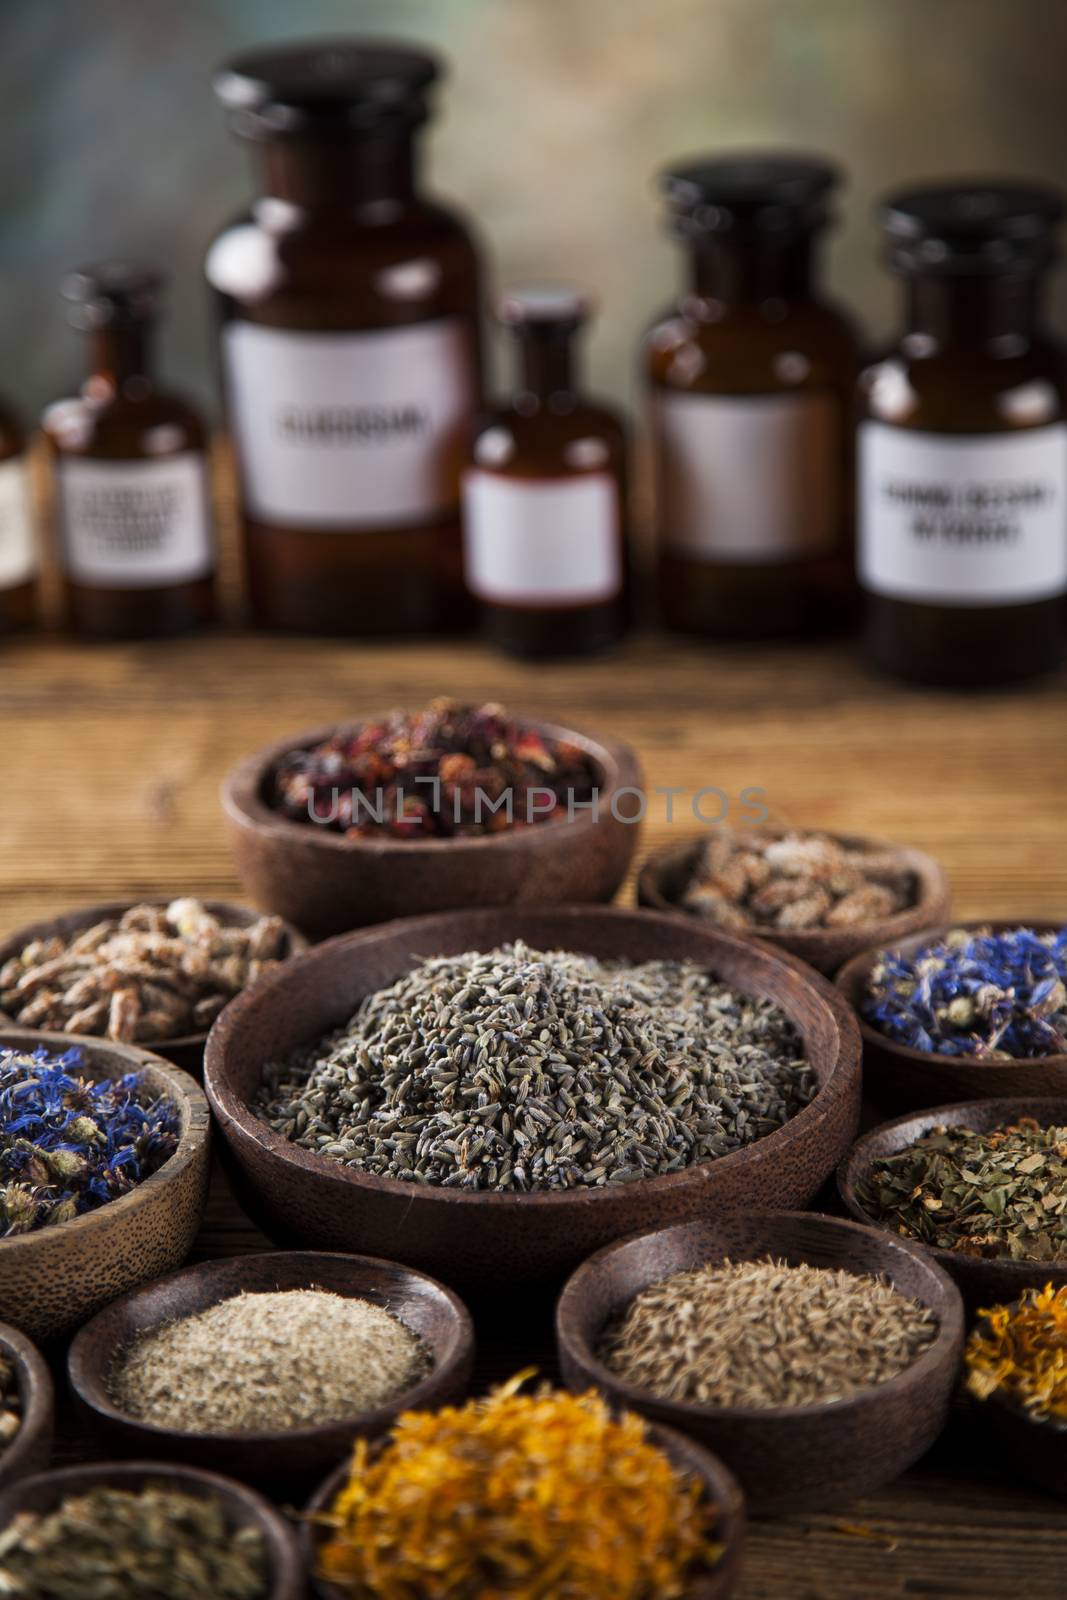 Herbs medicine and vintage wooden desk background by JanPietruszka